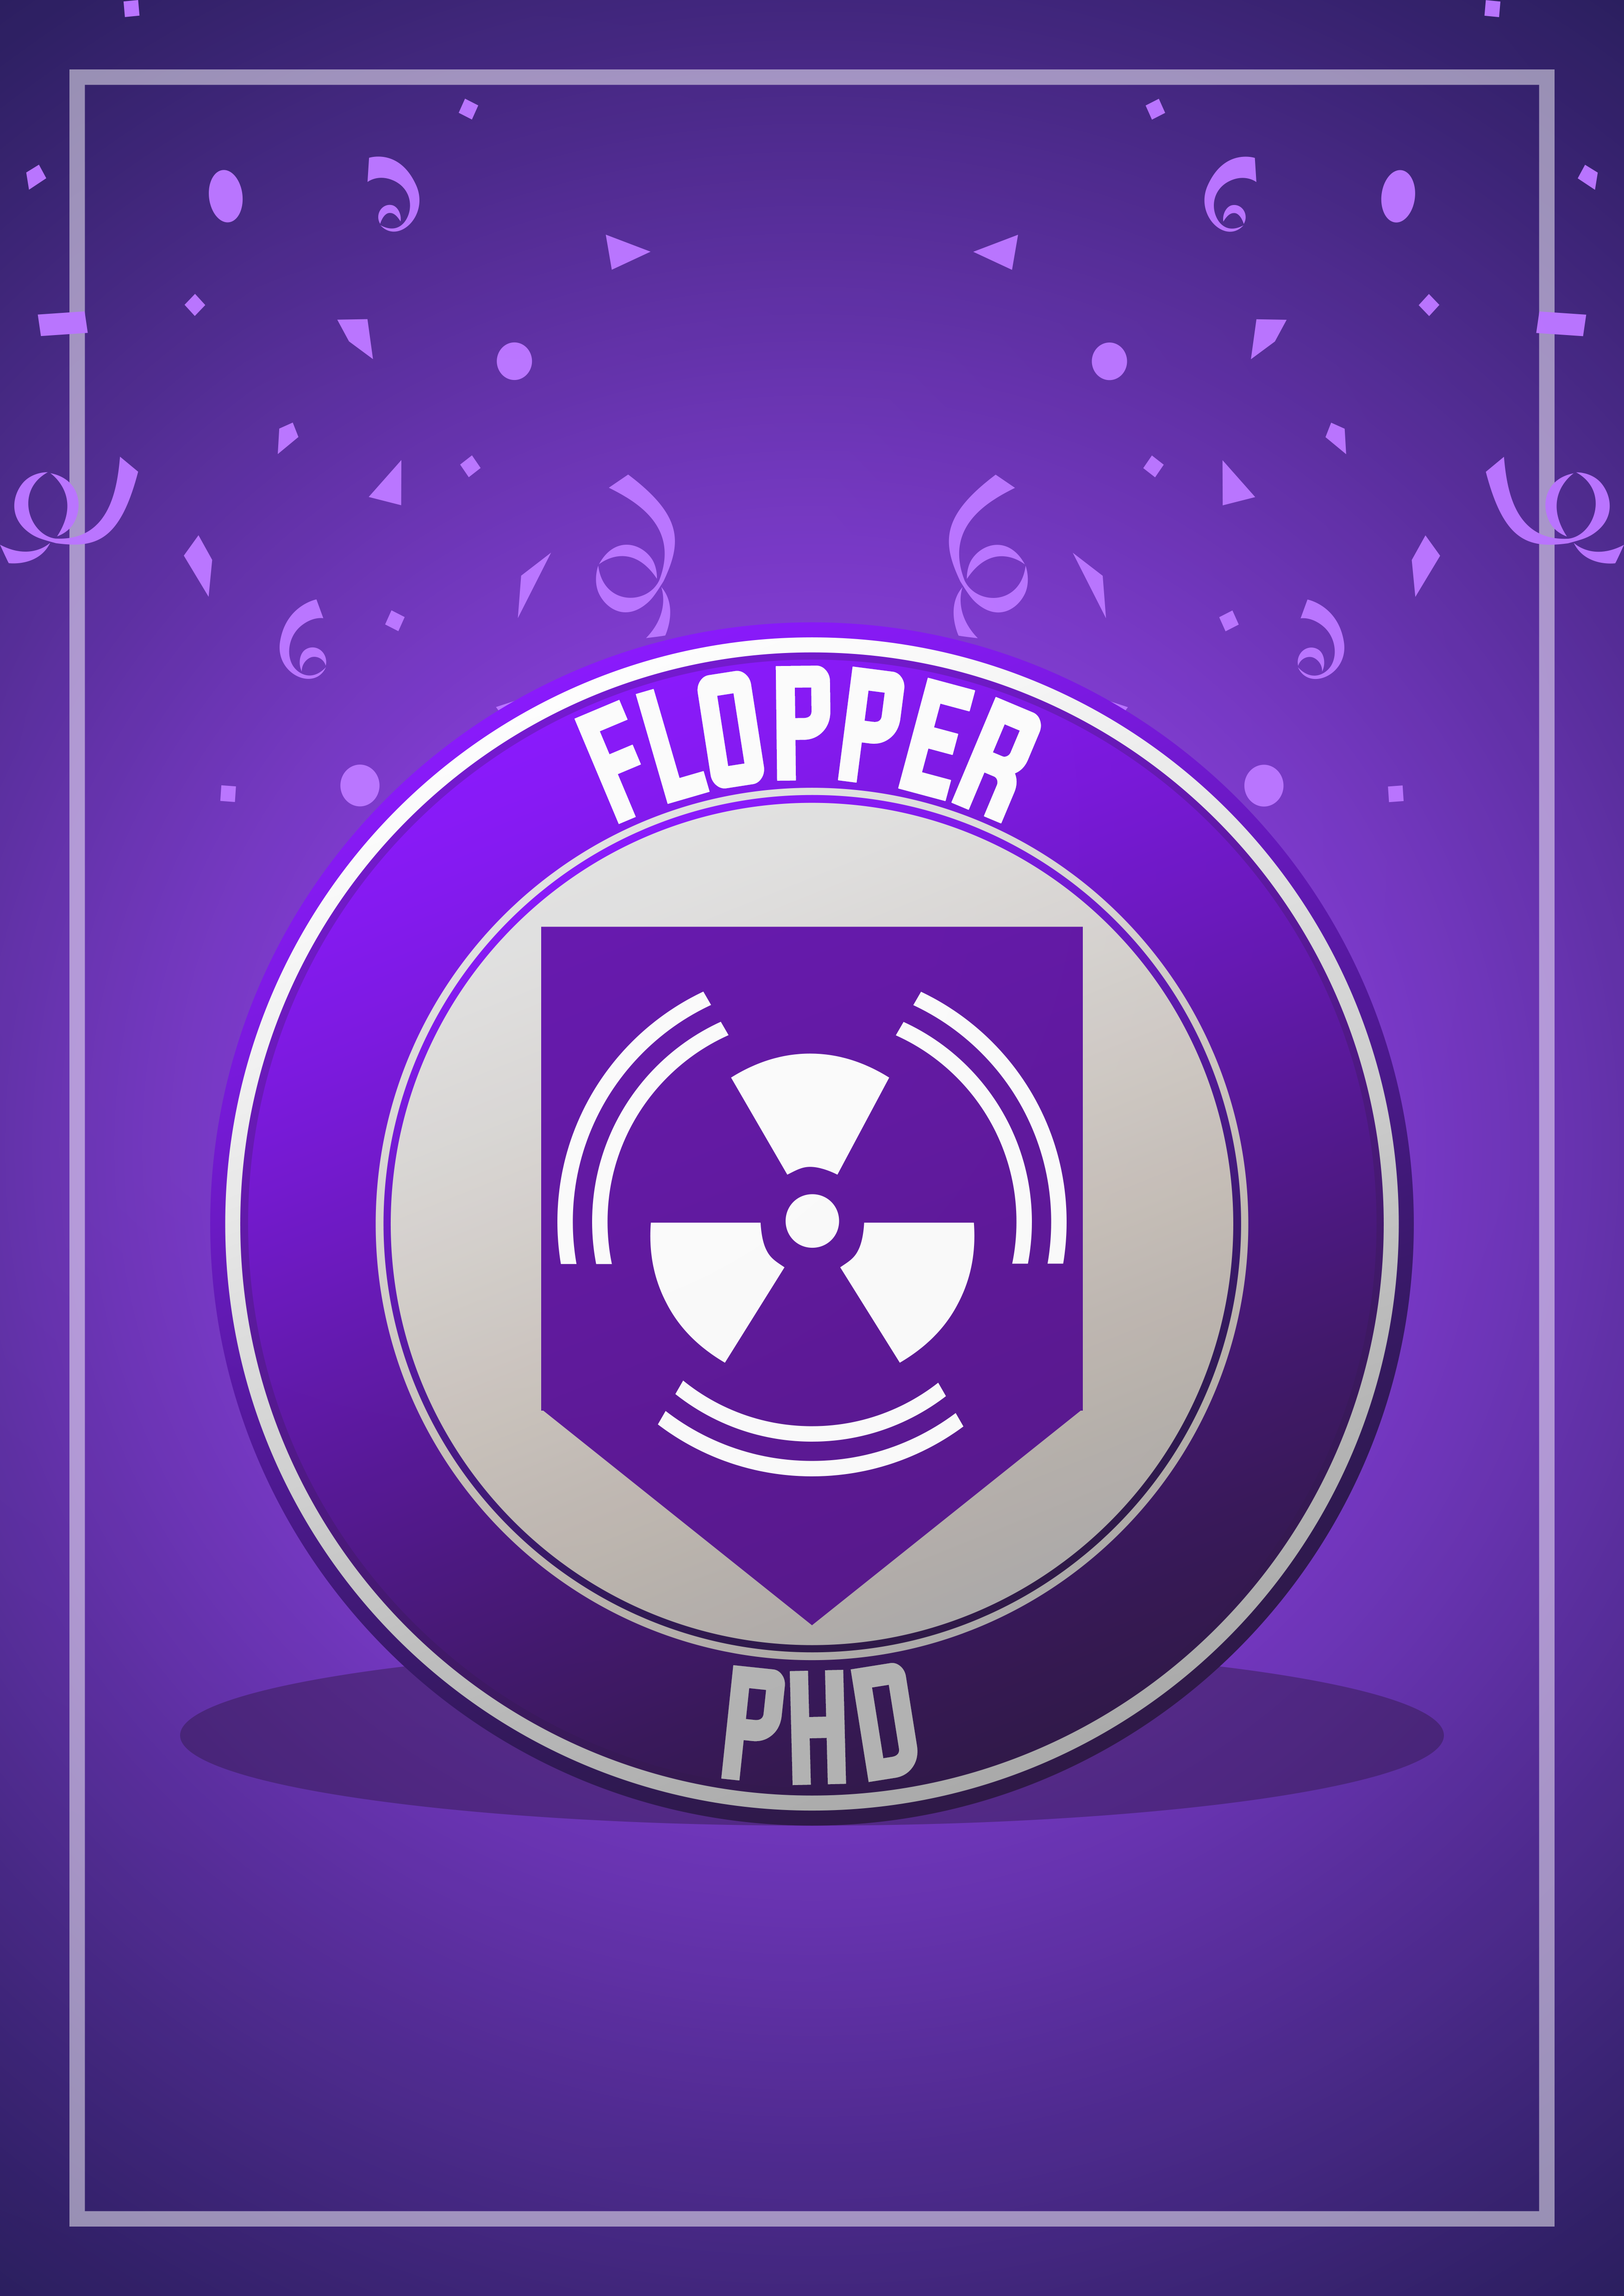 phd flopper symbol